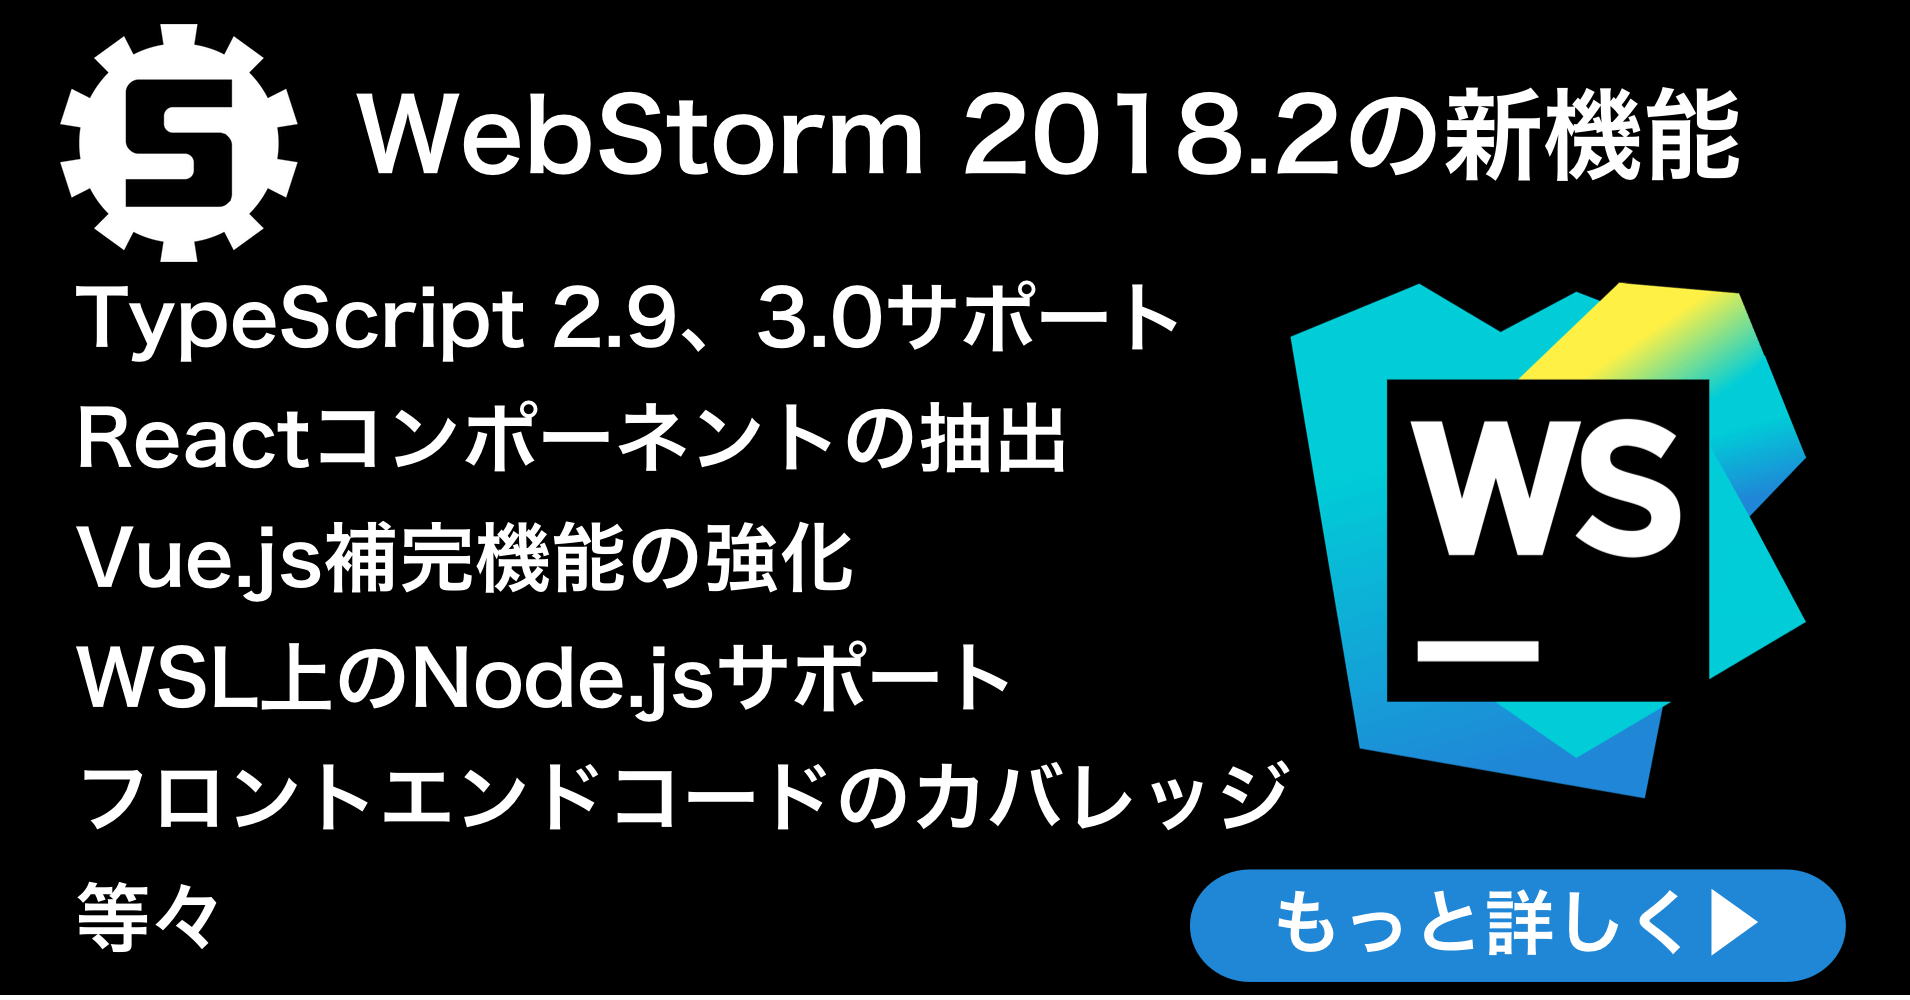 WebStorm 2018.2リリース